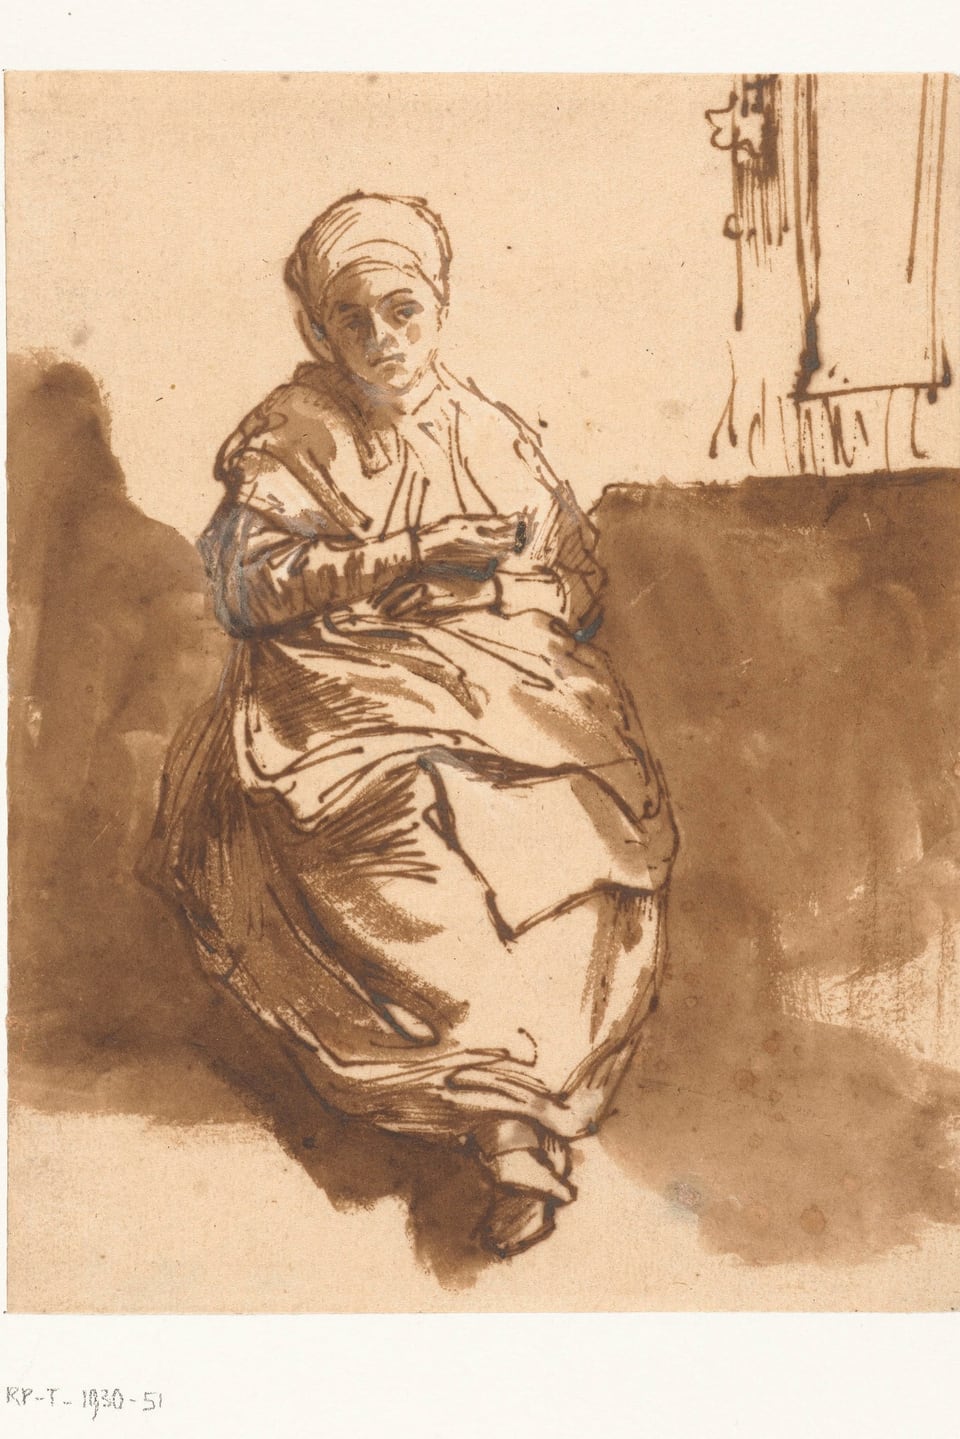 Zeichnung einer Frau